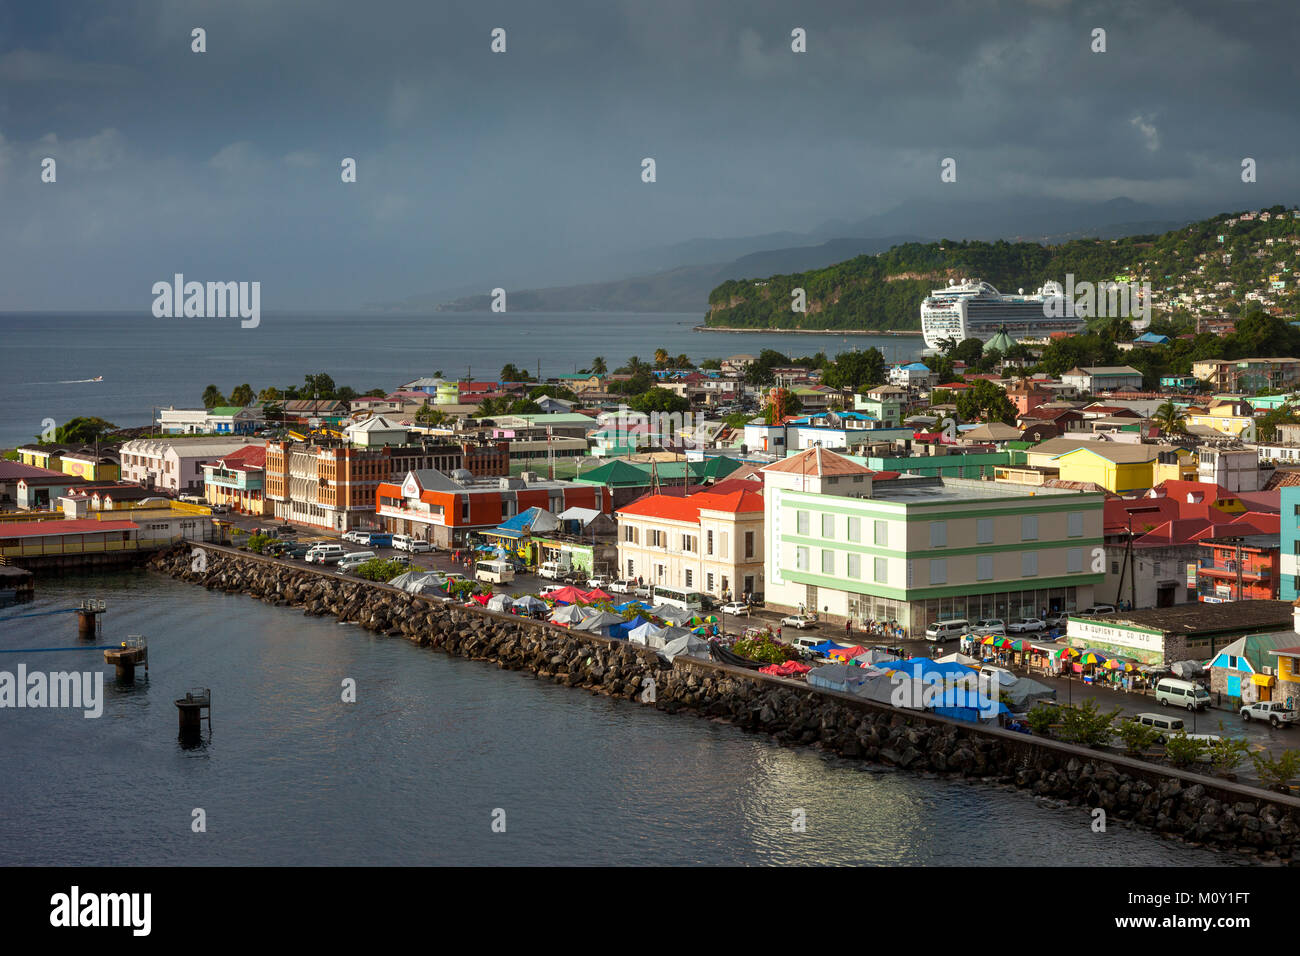 Colorful buildings line the wharf of Roseau under stormy skies, Dominica, Leeward Islands, West Indies Stock Photo